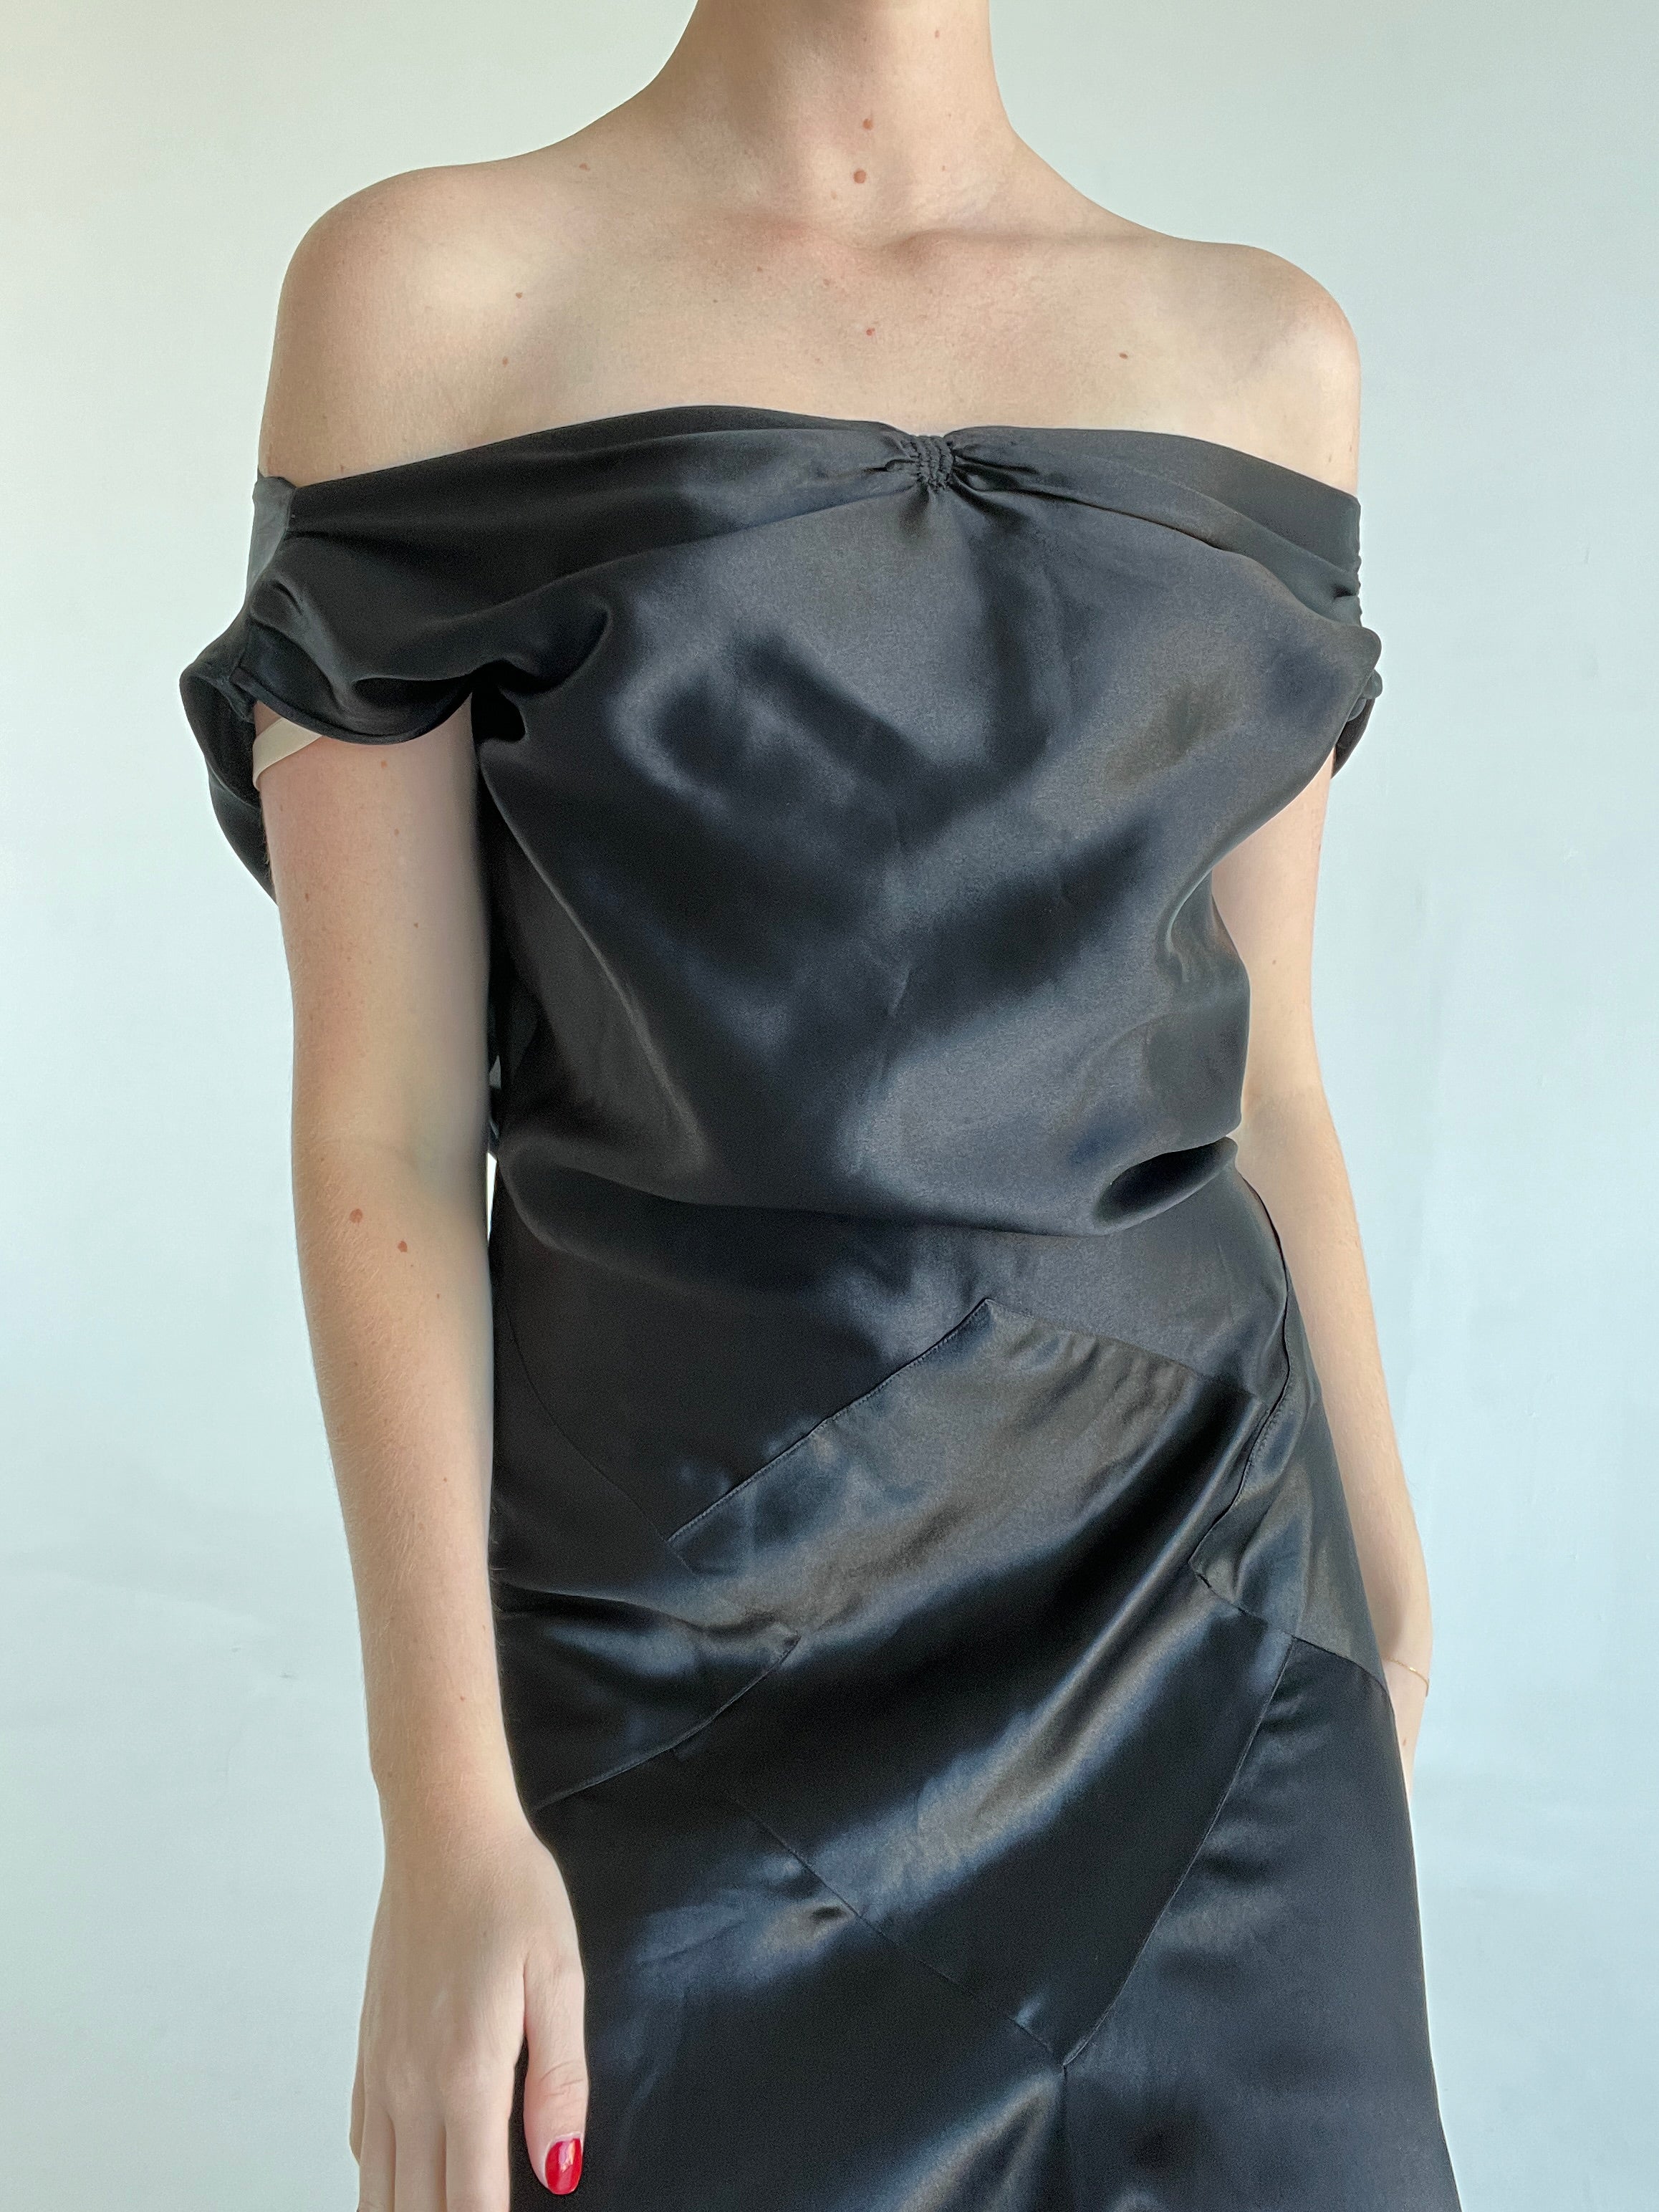 1930's Black Silk Gown